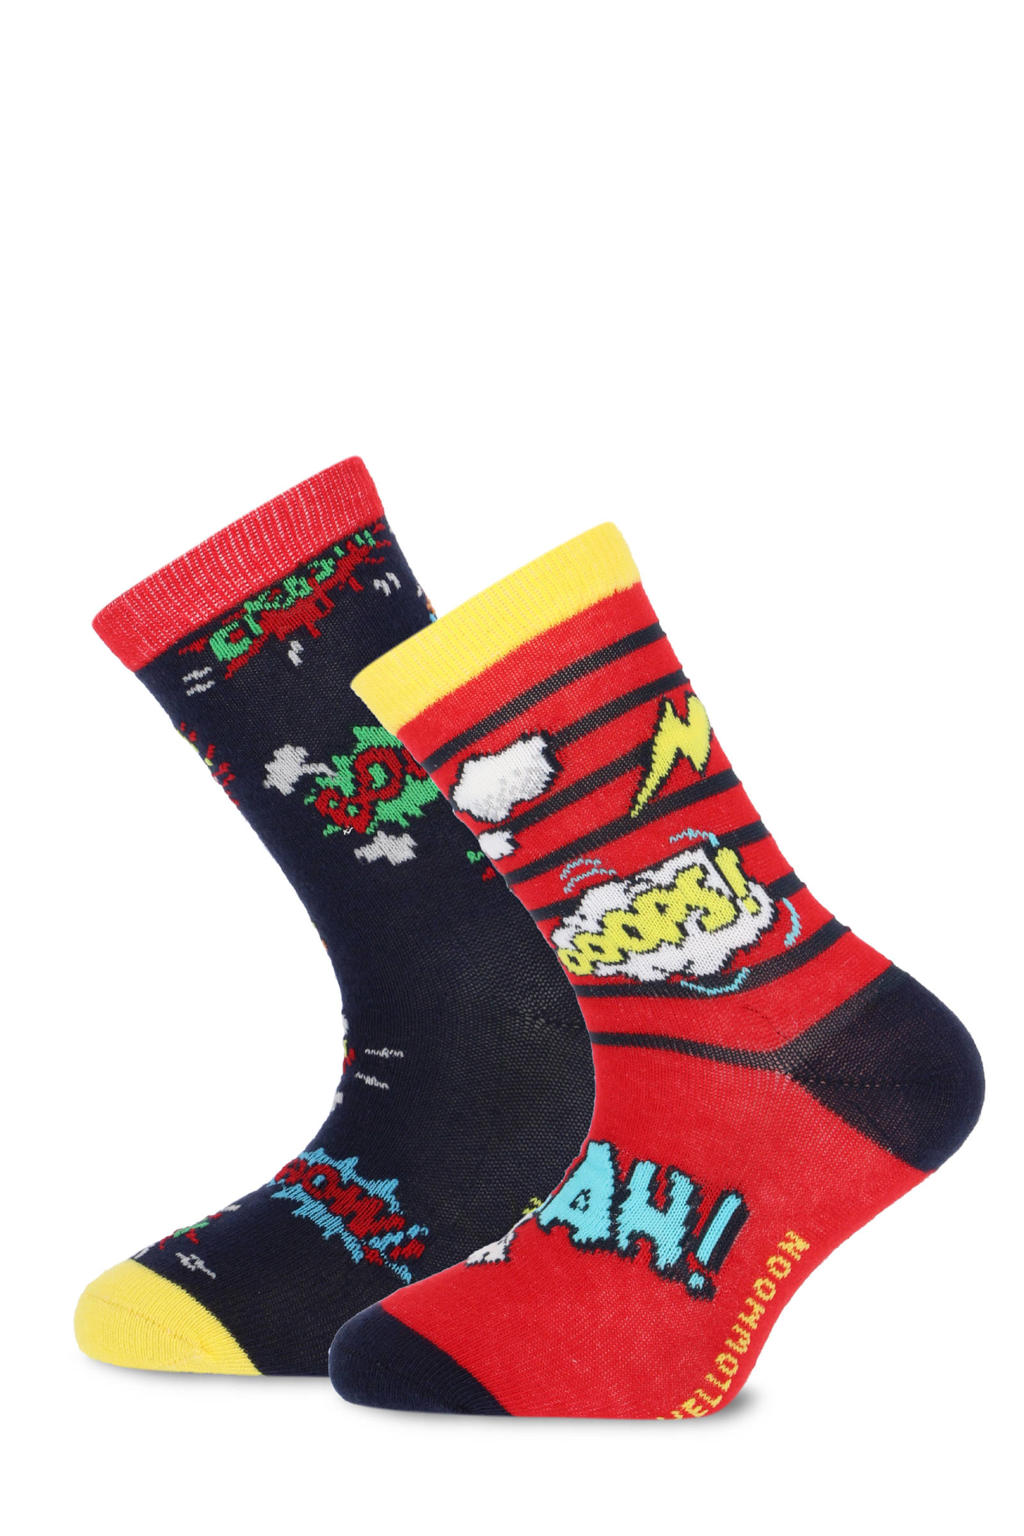 Yellow Moon sokken met print - set van 2 rood/zwart